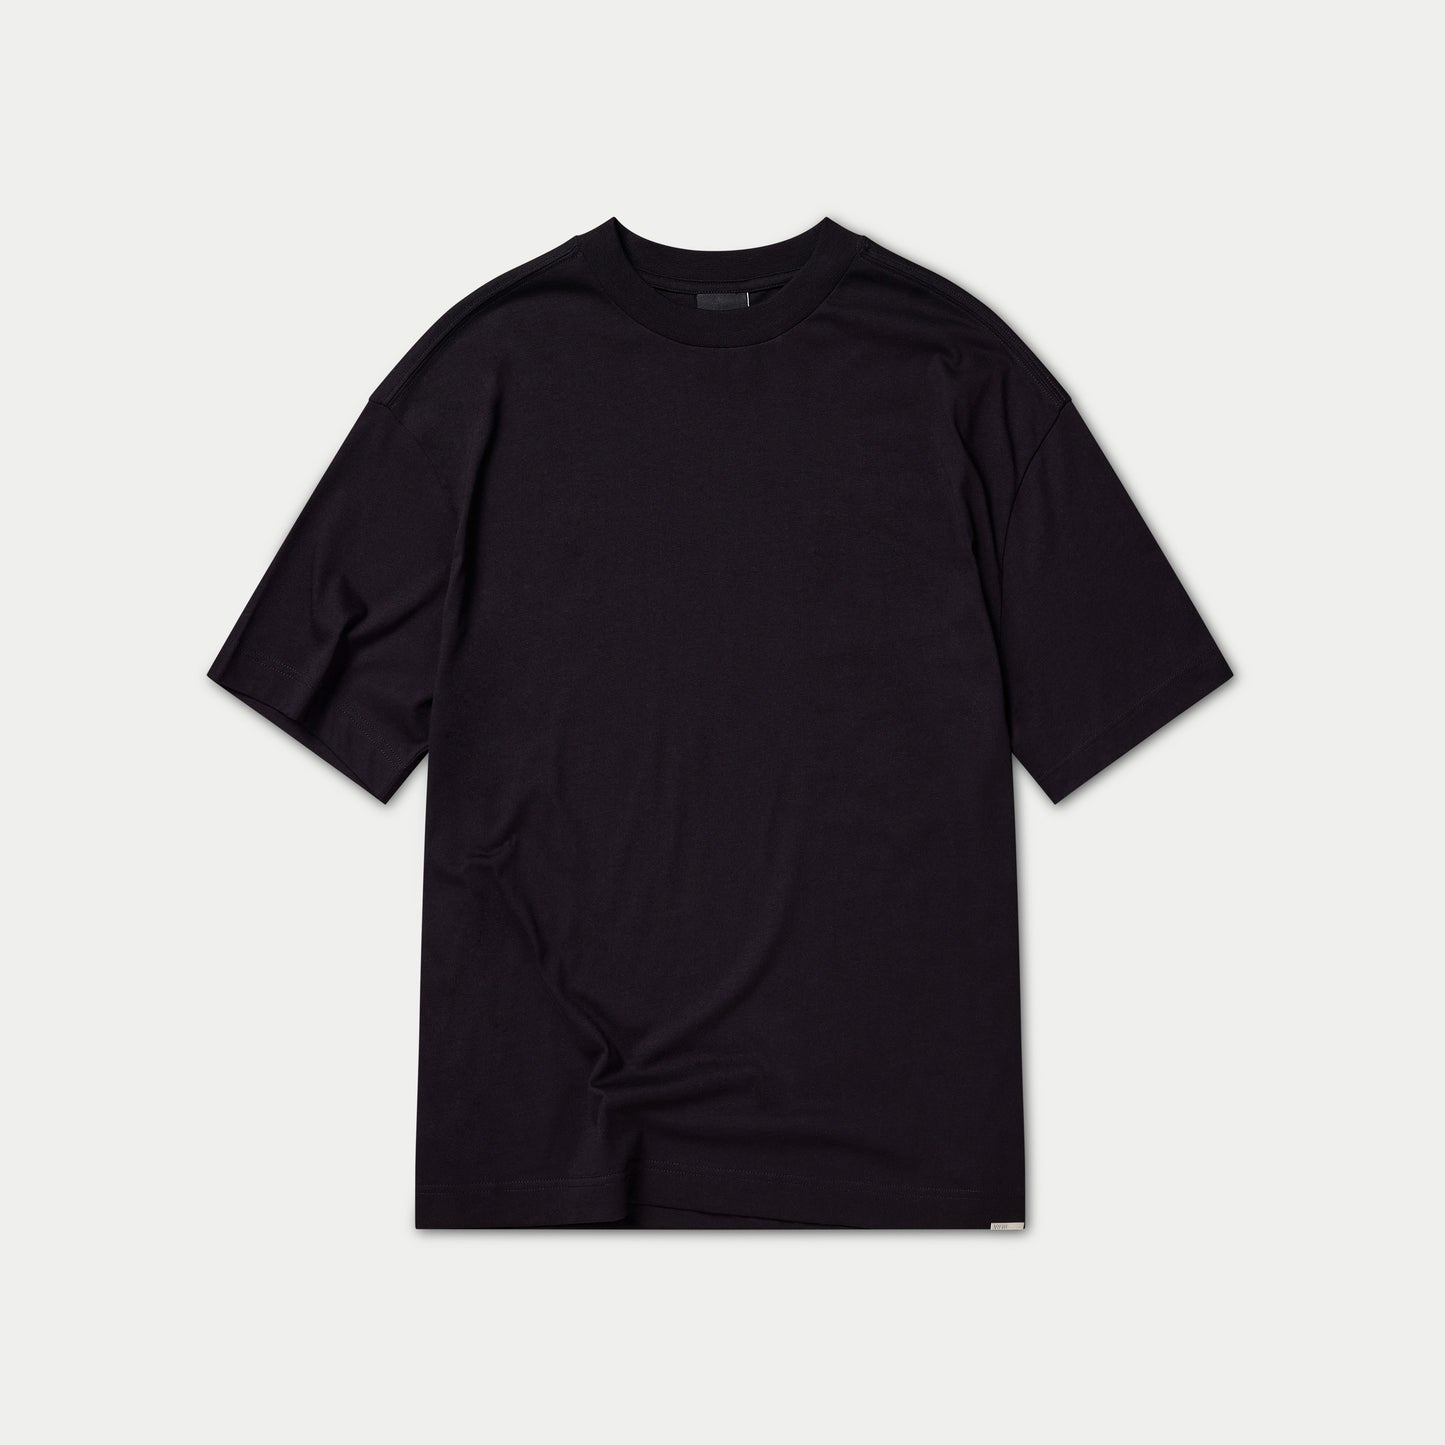 Blanks T-Shirt Pack of 3 - Black